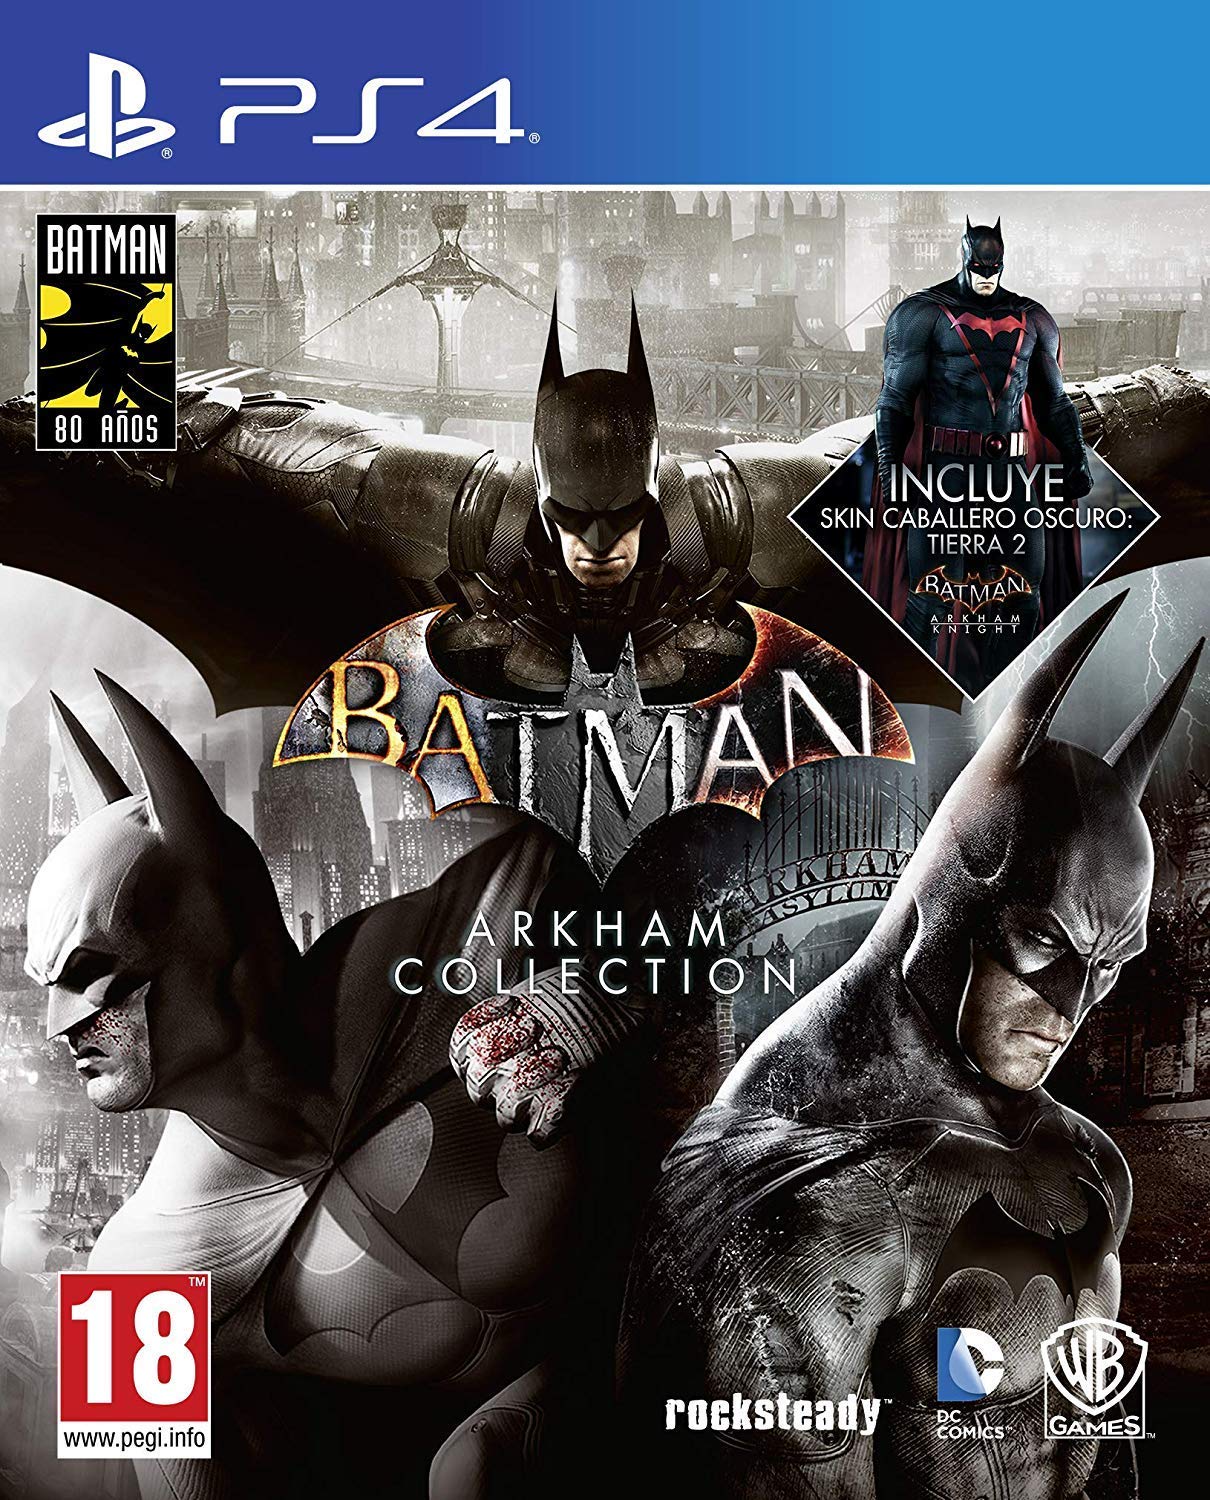 Batman: Arkham Collection - Edición Exclusiva Amazon (Incluye steelbook y skin de caballero oscuro)